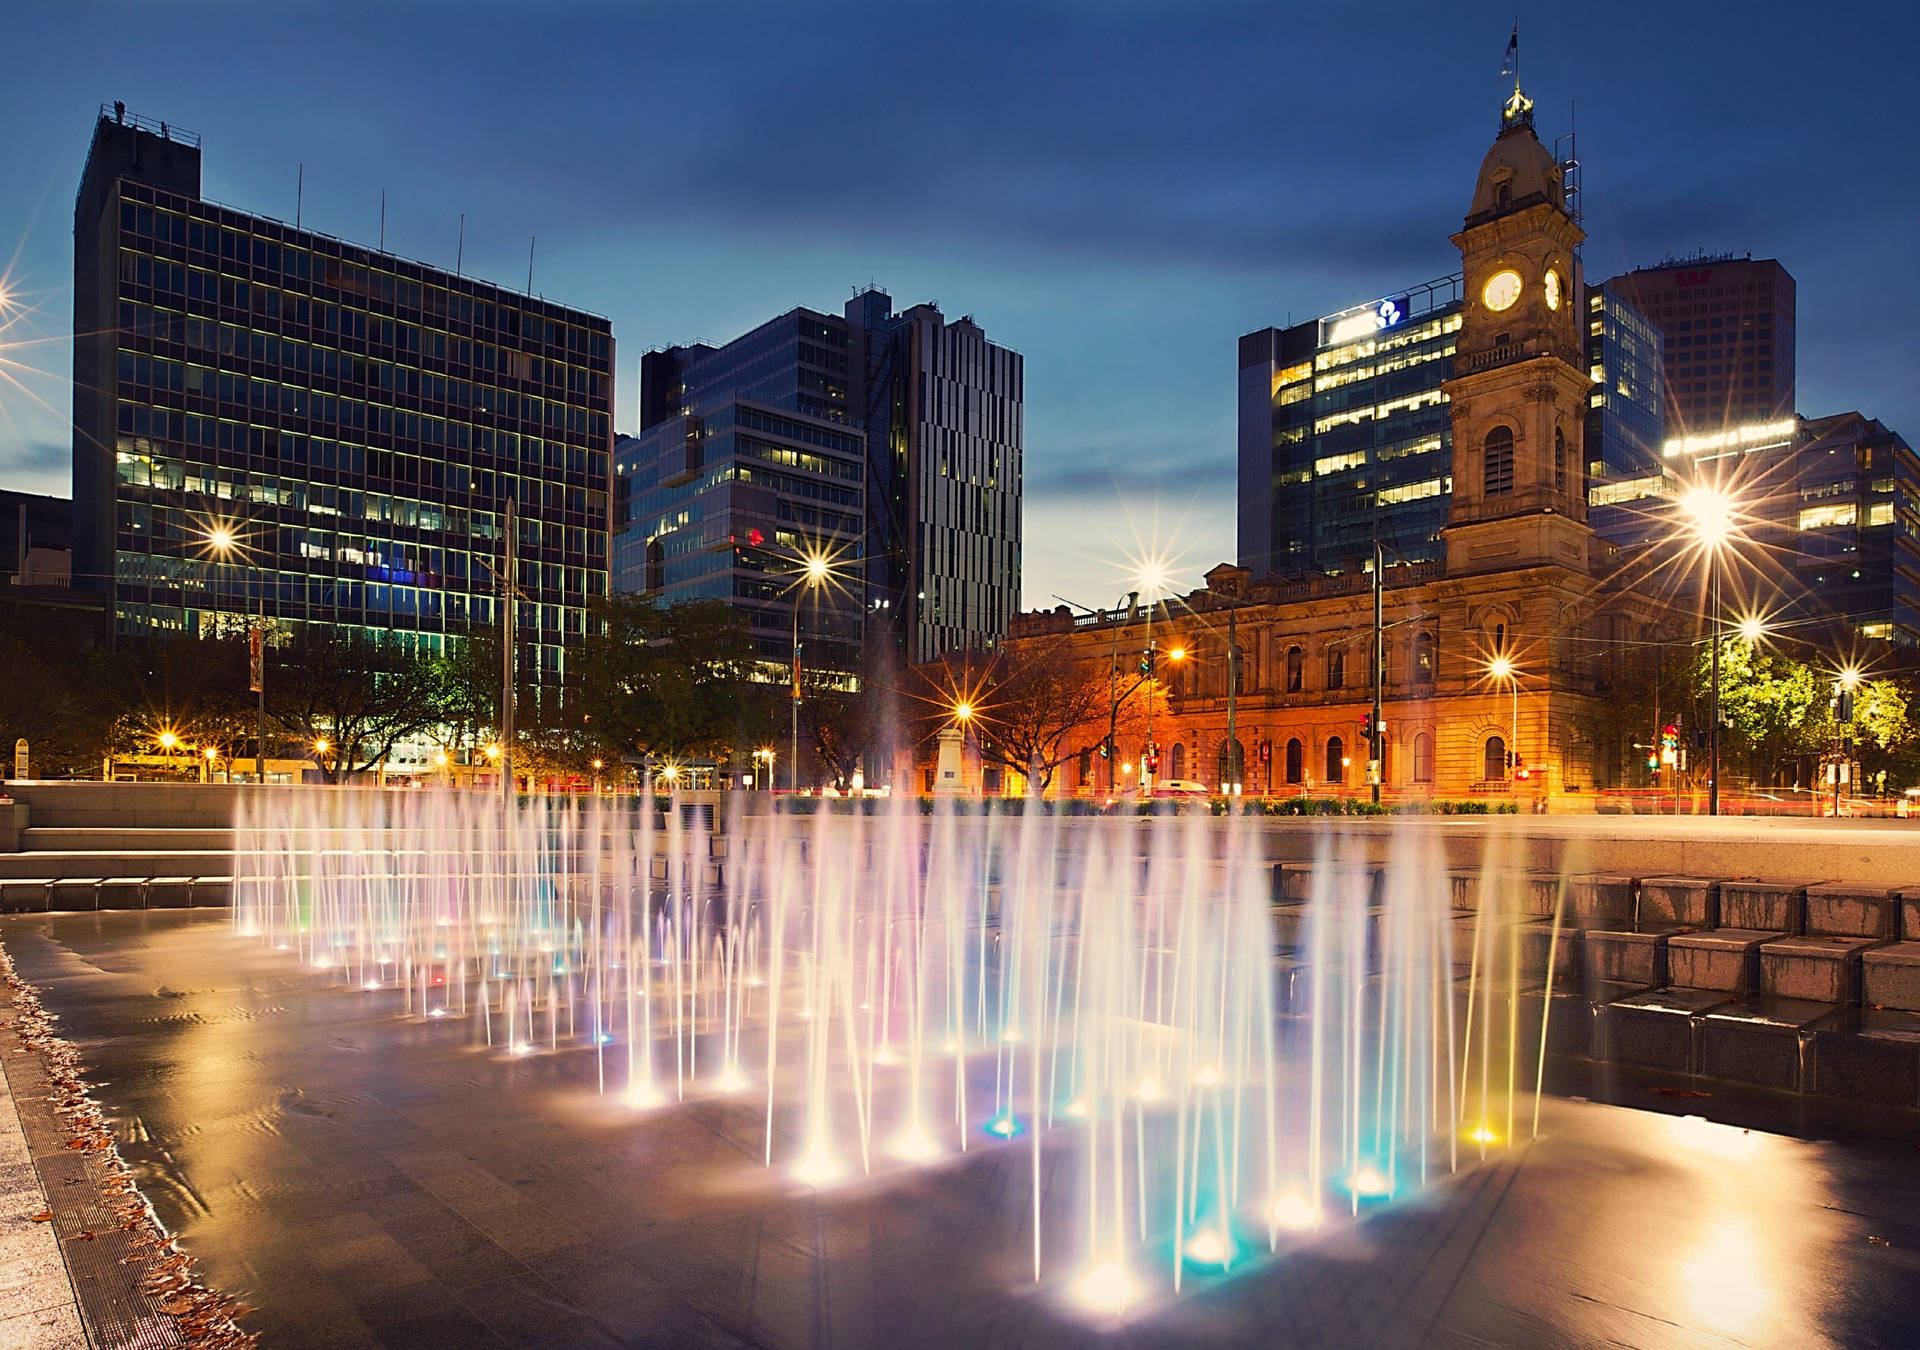 Adelaide Victoria Square Fountain